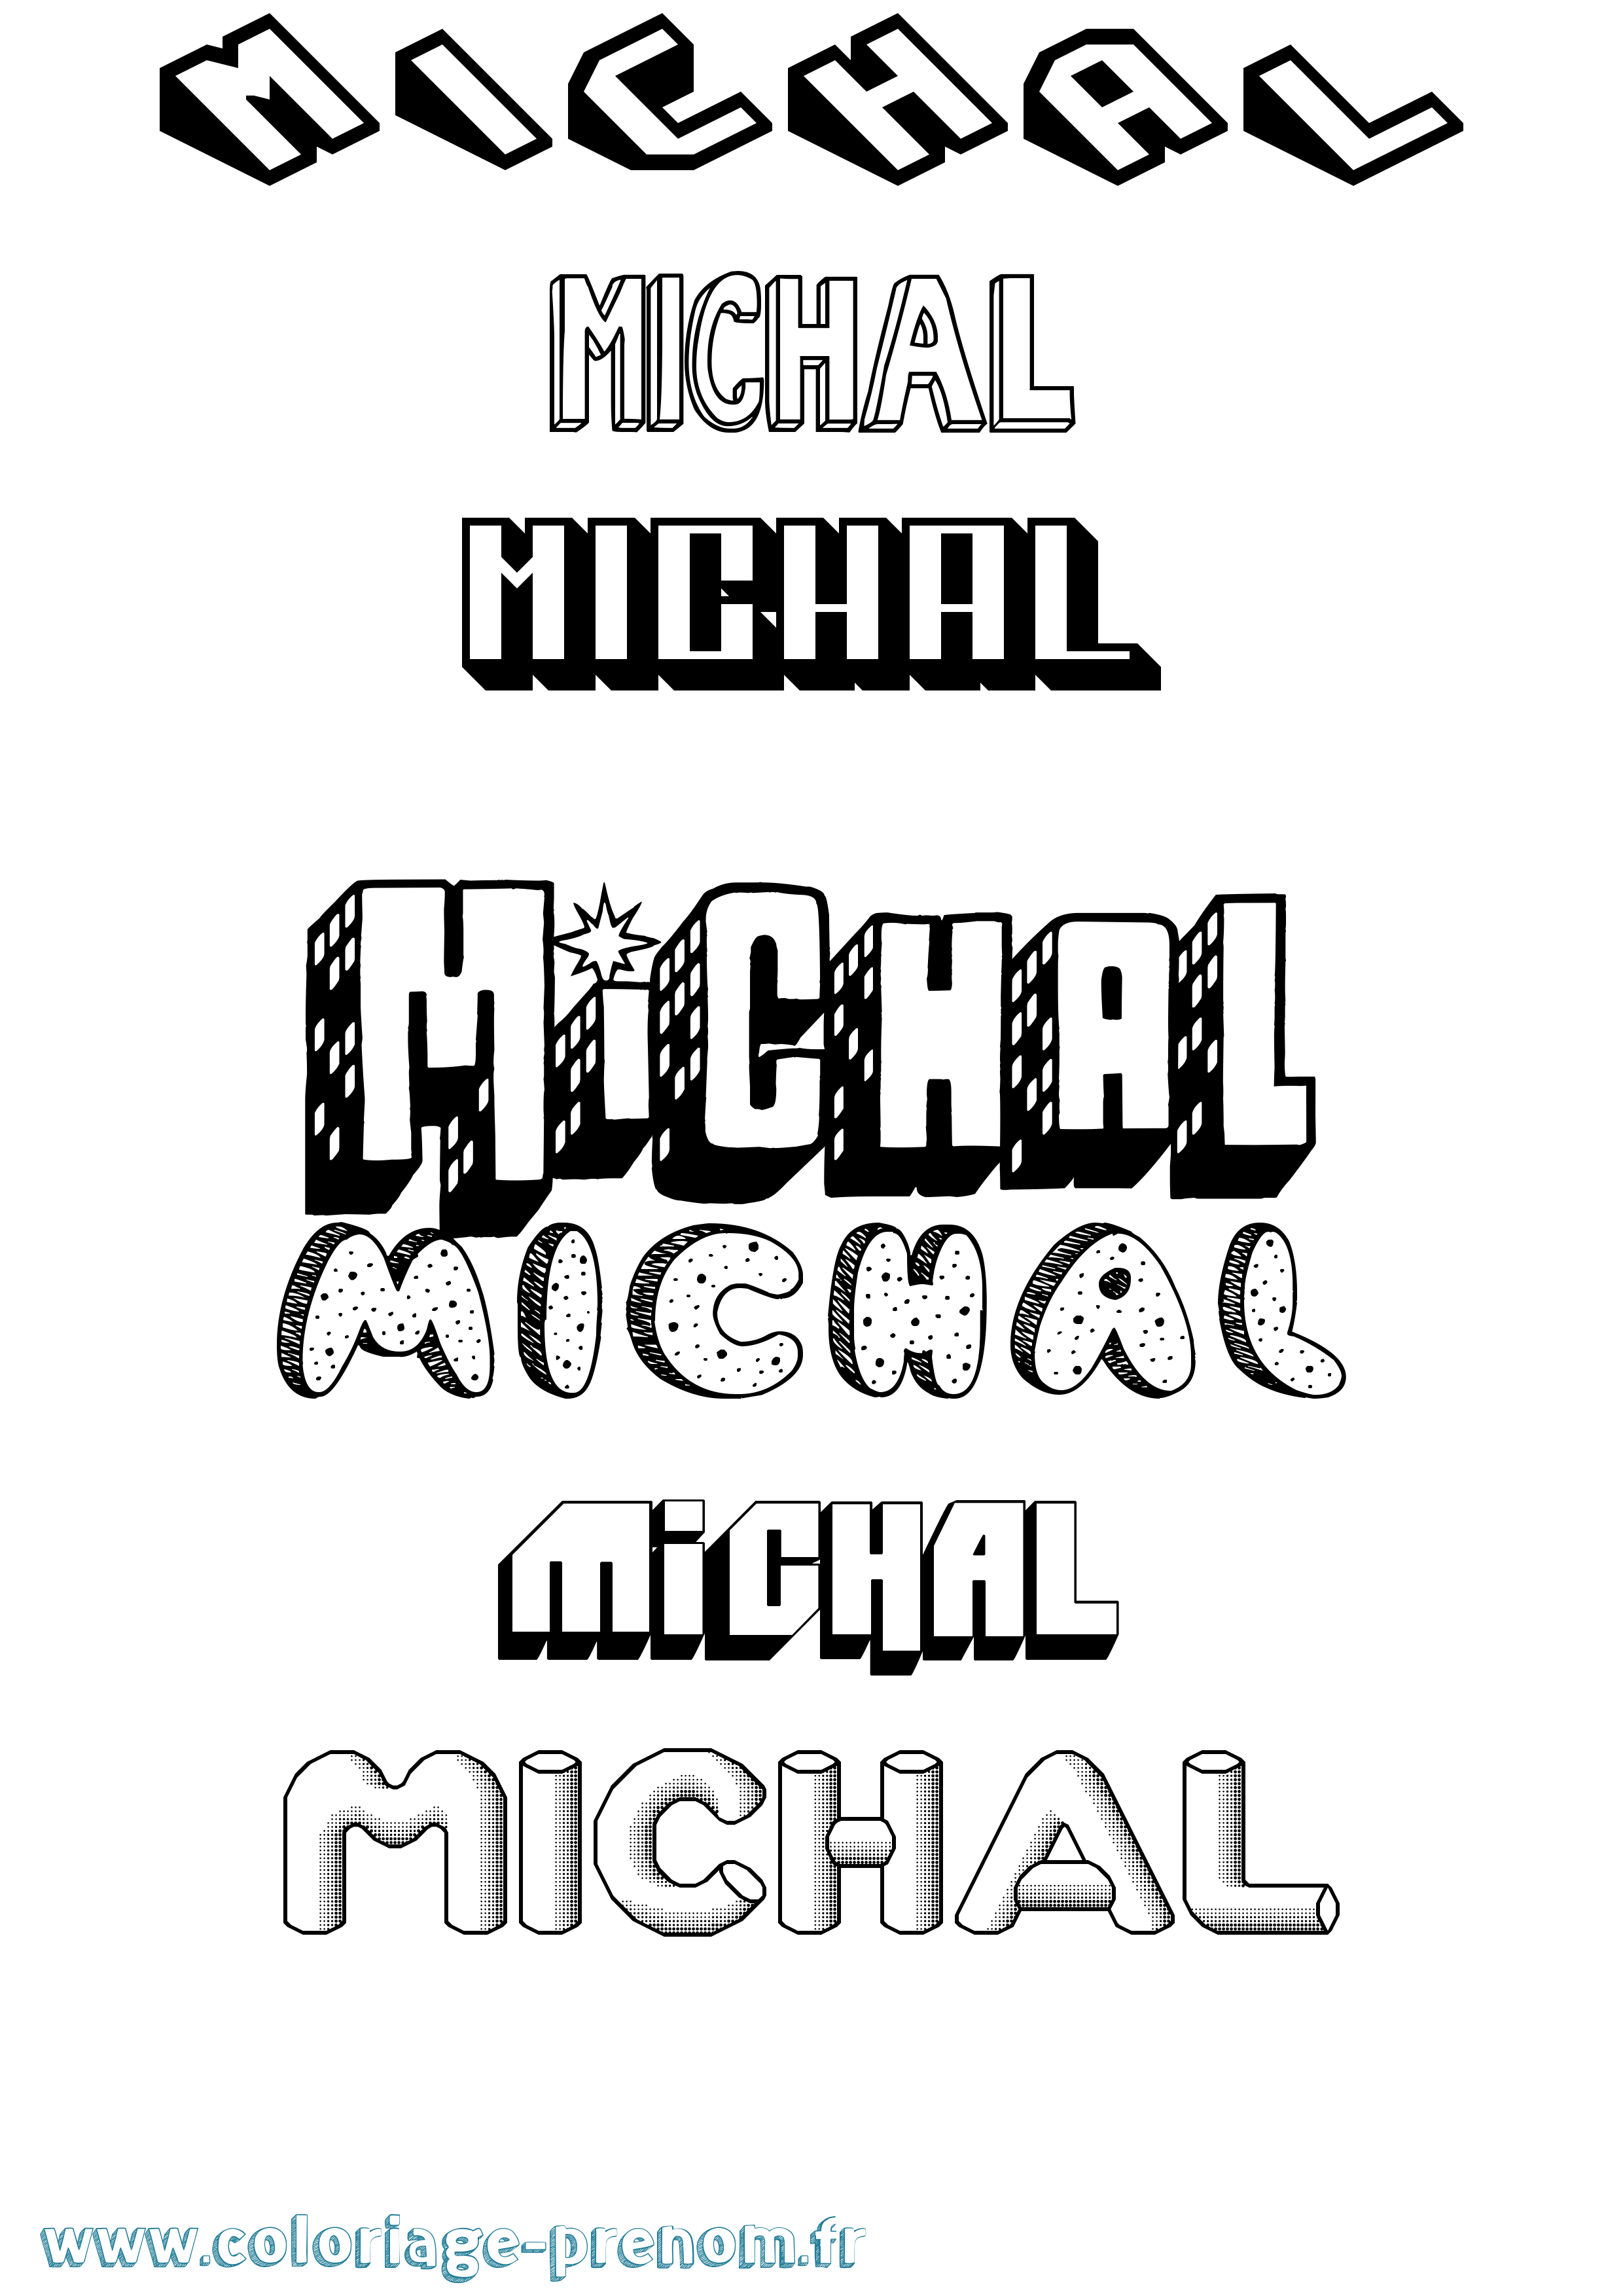 Coloriage prénom Michal Effet 3D